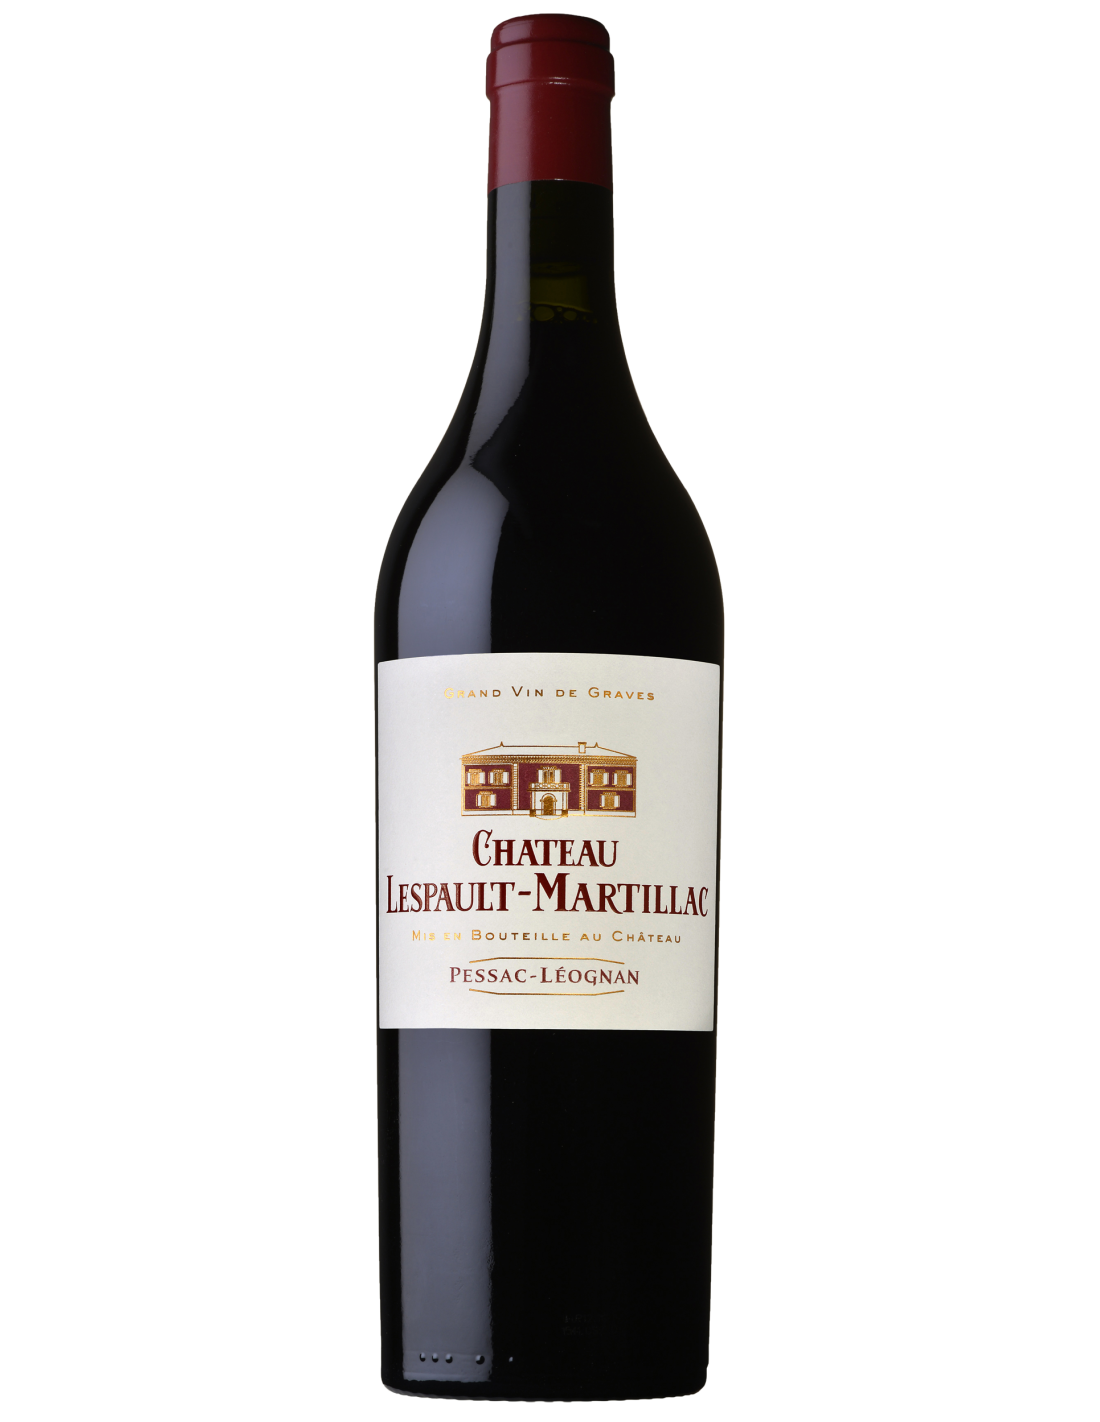 Vin rosu sec, Chateau Lespault-Martillac Pessac-Leognan, 0.75L, 14.5% alc., Franta alcooldiscount.ro